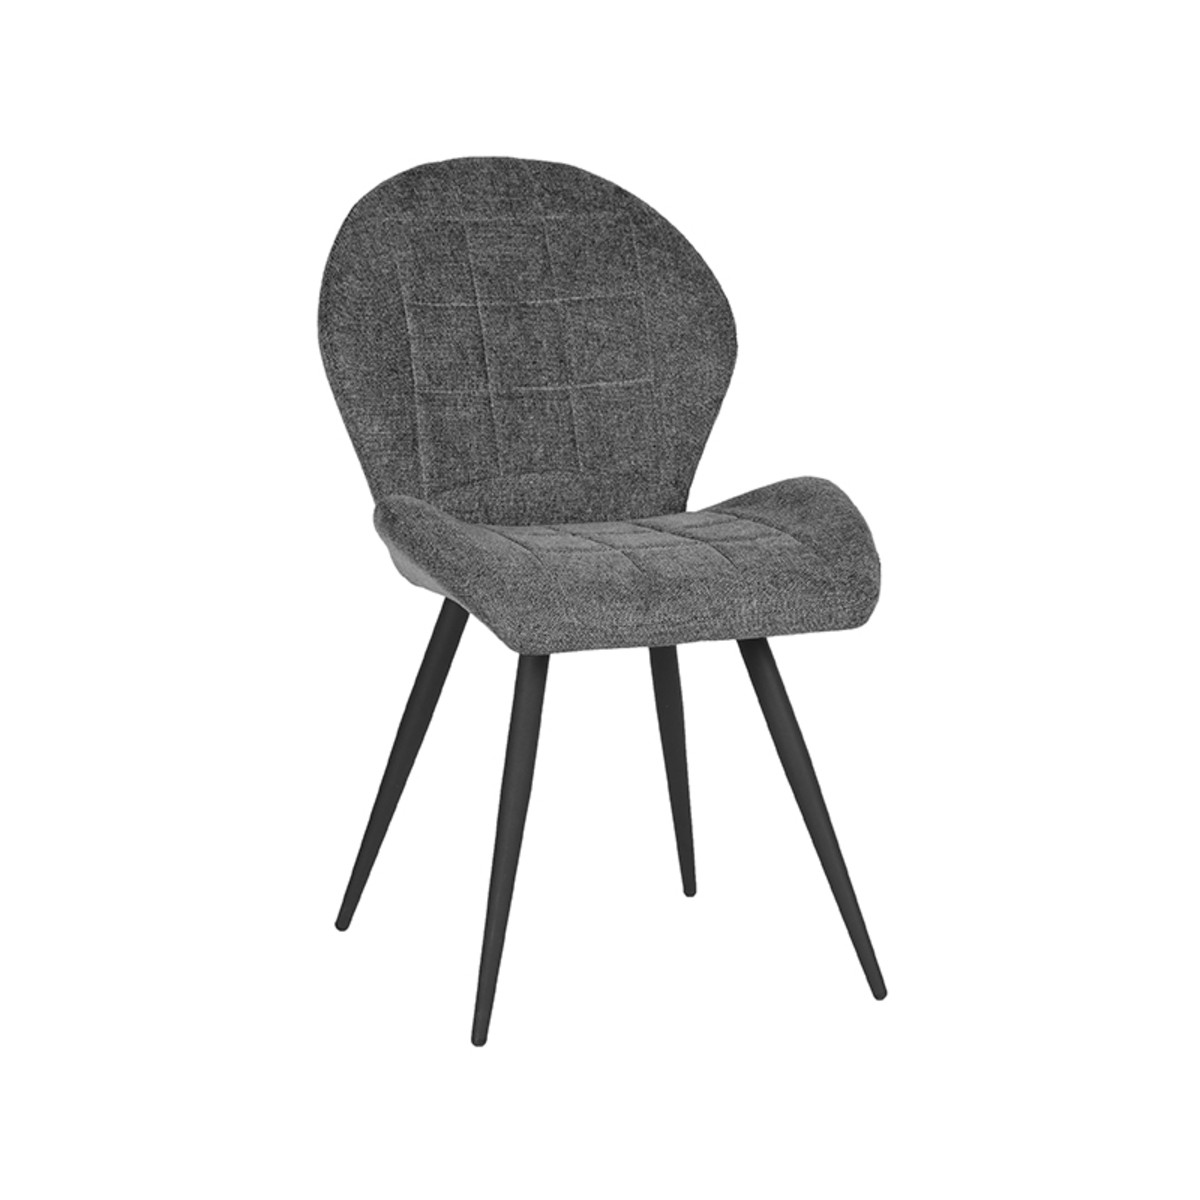 LABEL51 jídelní židle SIL antracit tkanina Color: Anthracite